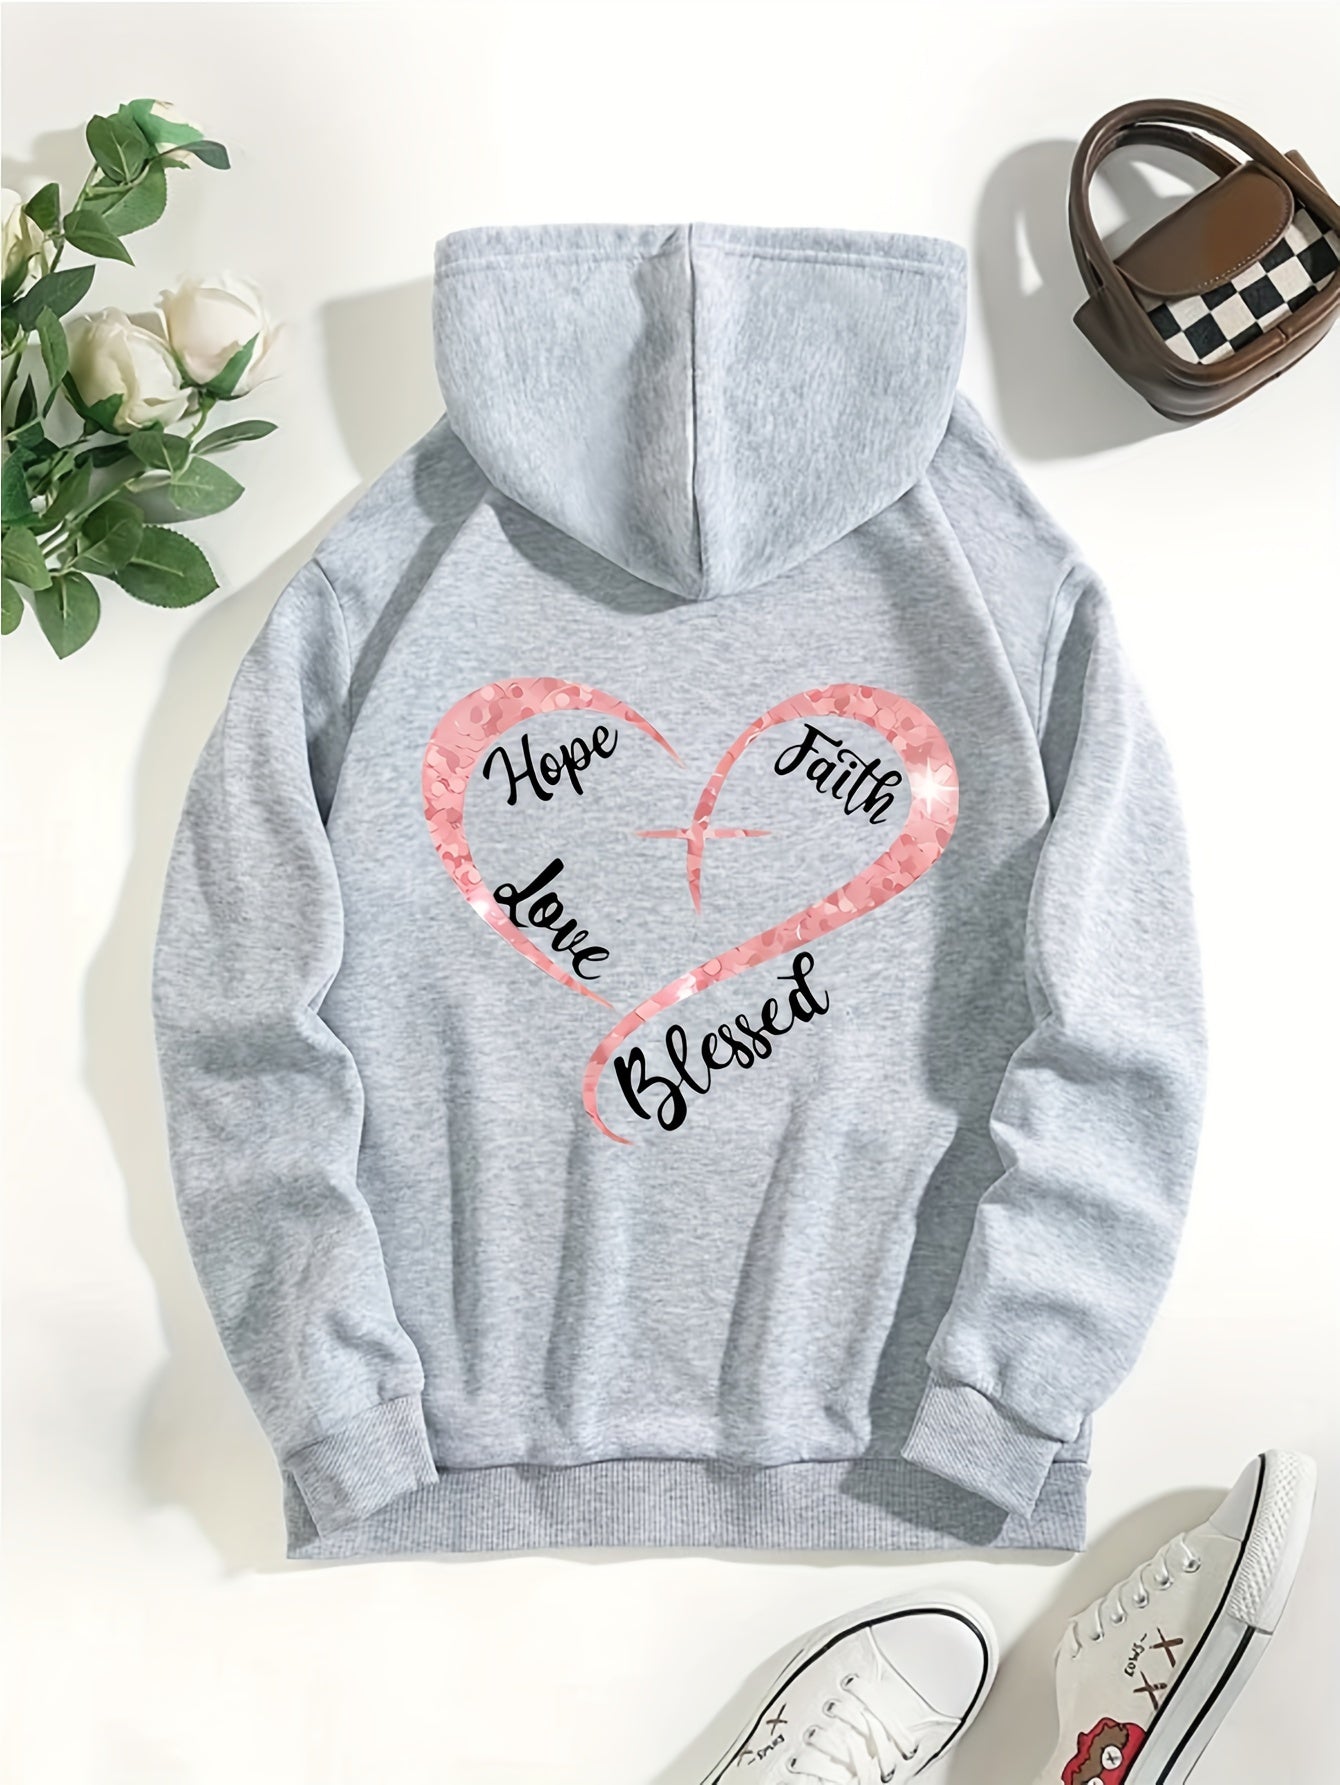 Hope Faith Love Blessed Women's Christian Pullover Hooded Sweatshirt claimedbygoddesigns